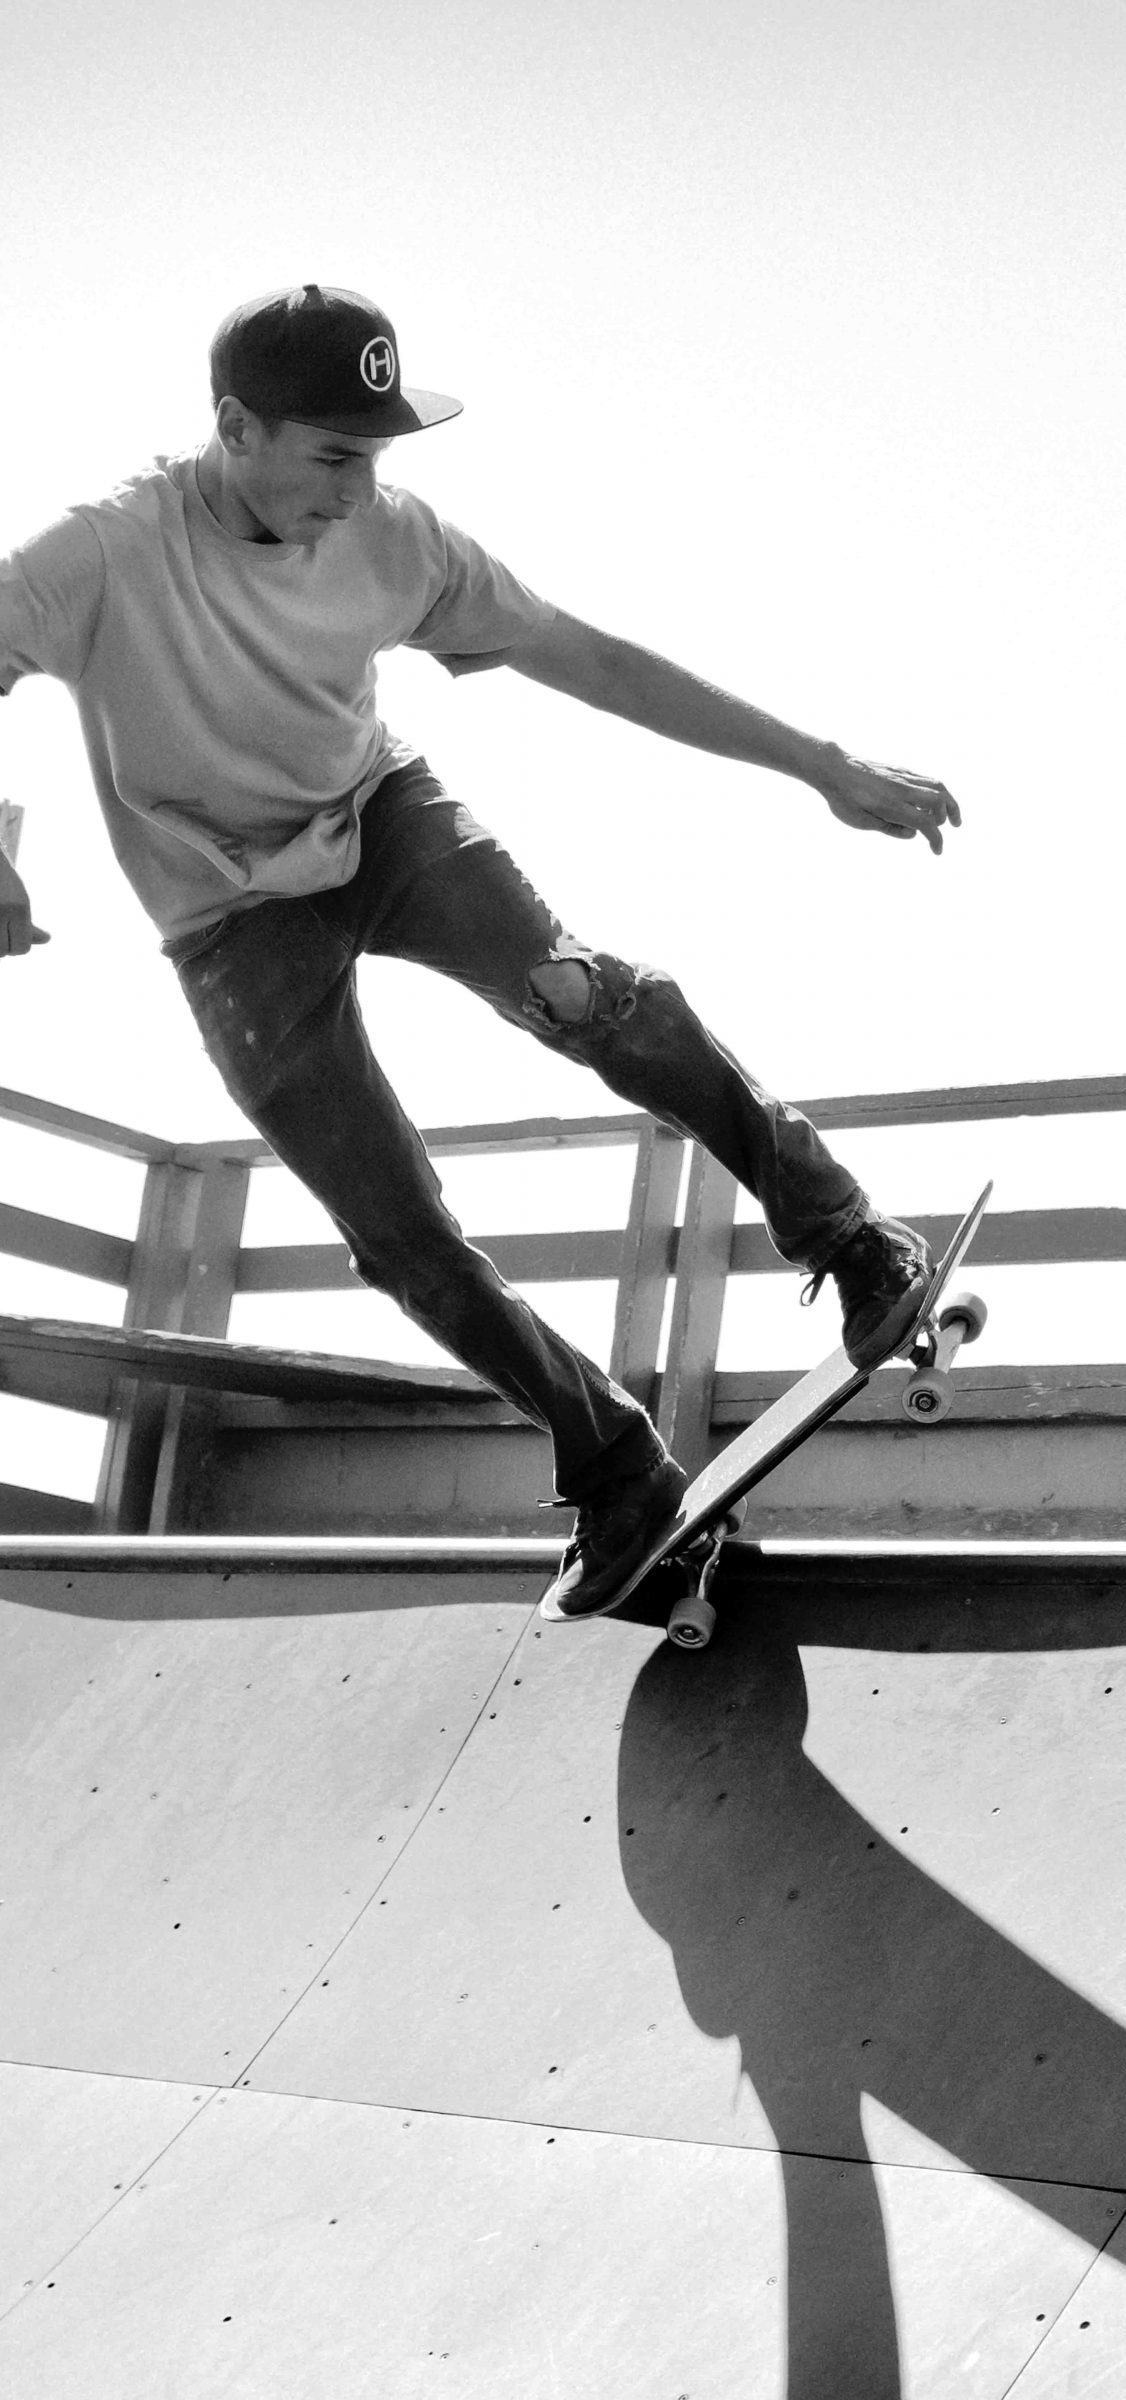 old school skateboard deck